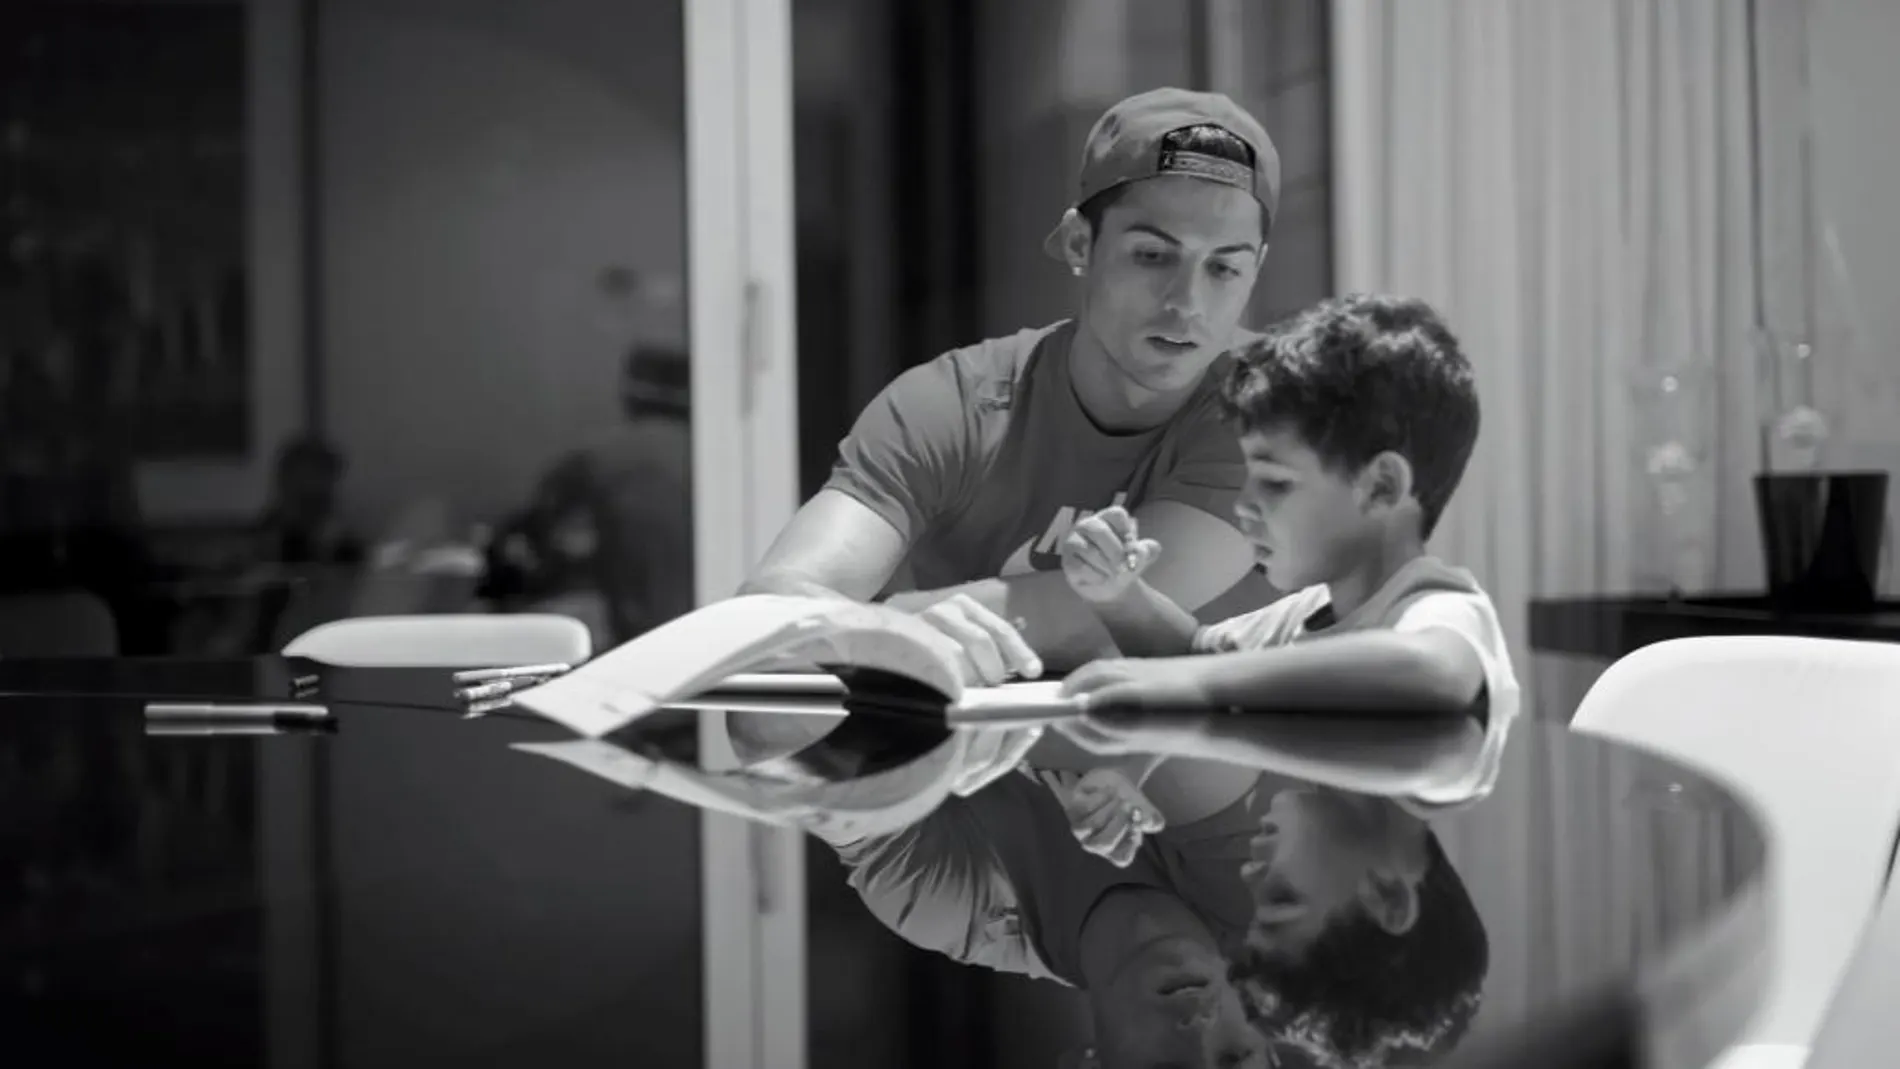 Imagen facilitada por Universal Picture del documental "Ronaldo", que se estrena el próximo 9 de noviembre.